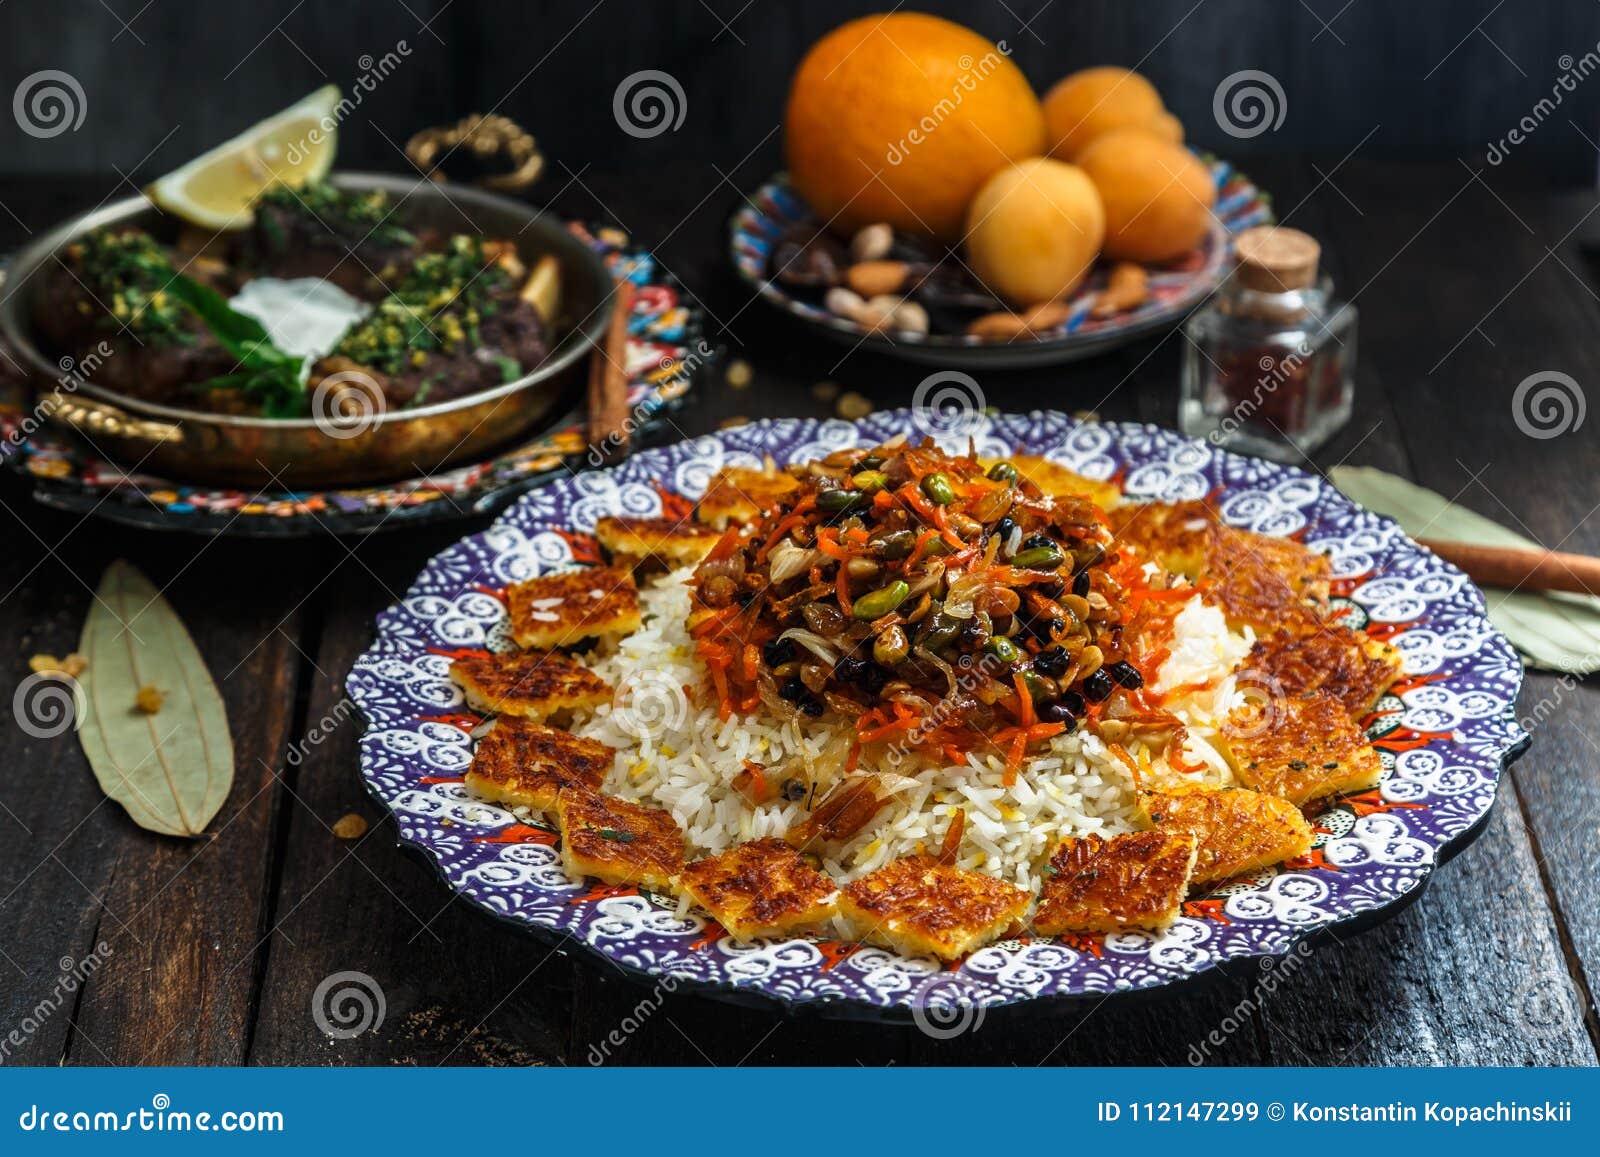 Блюда на уразу. Блюда на Ураза байрам. Иранская кухня. Узбекская кухня блюда на скатерти.